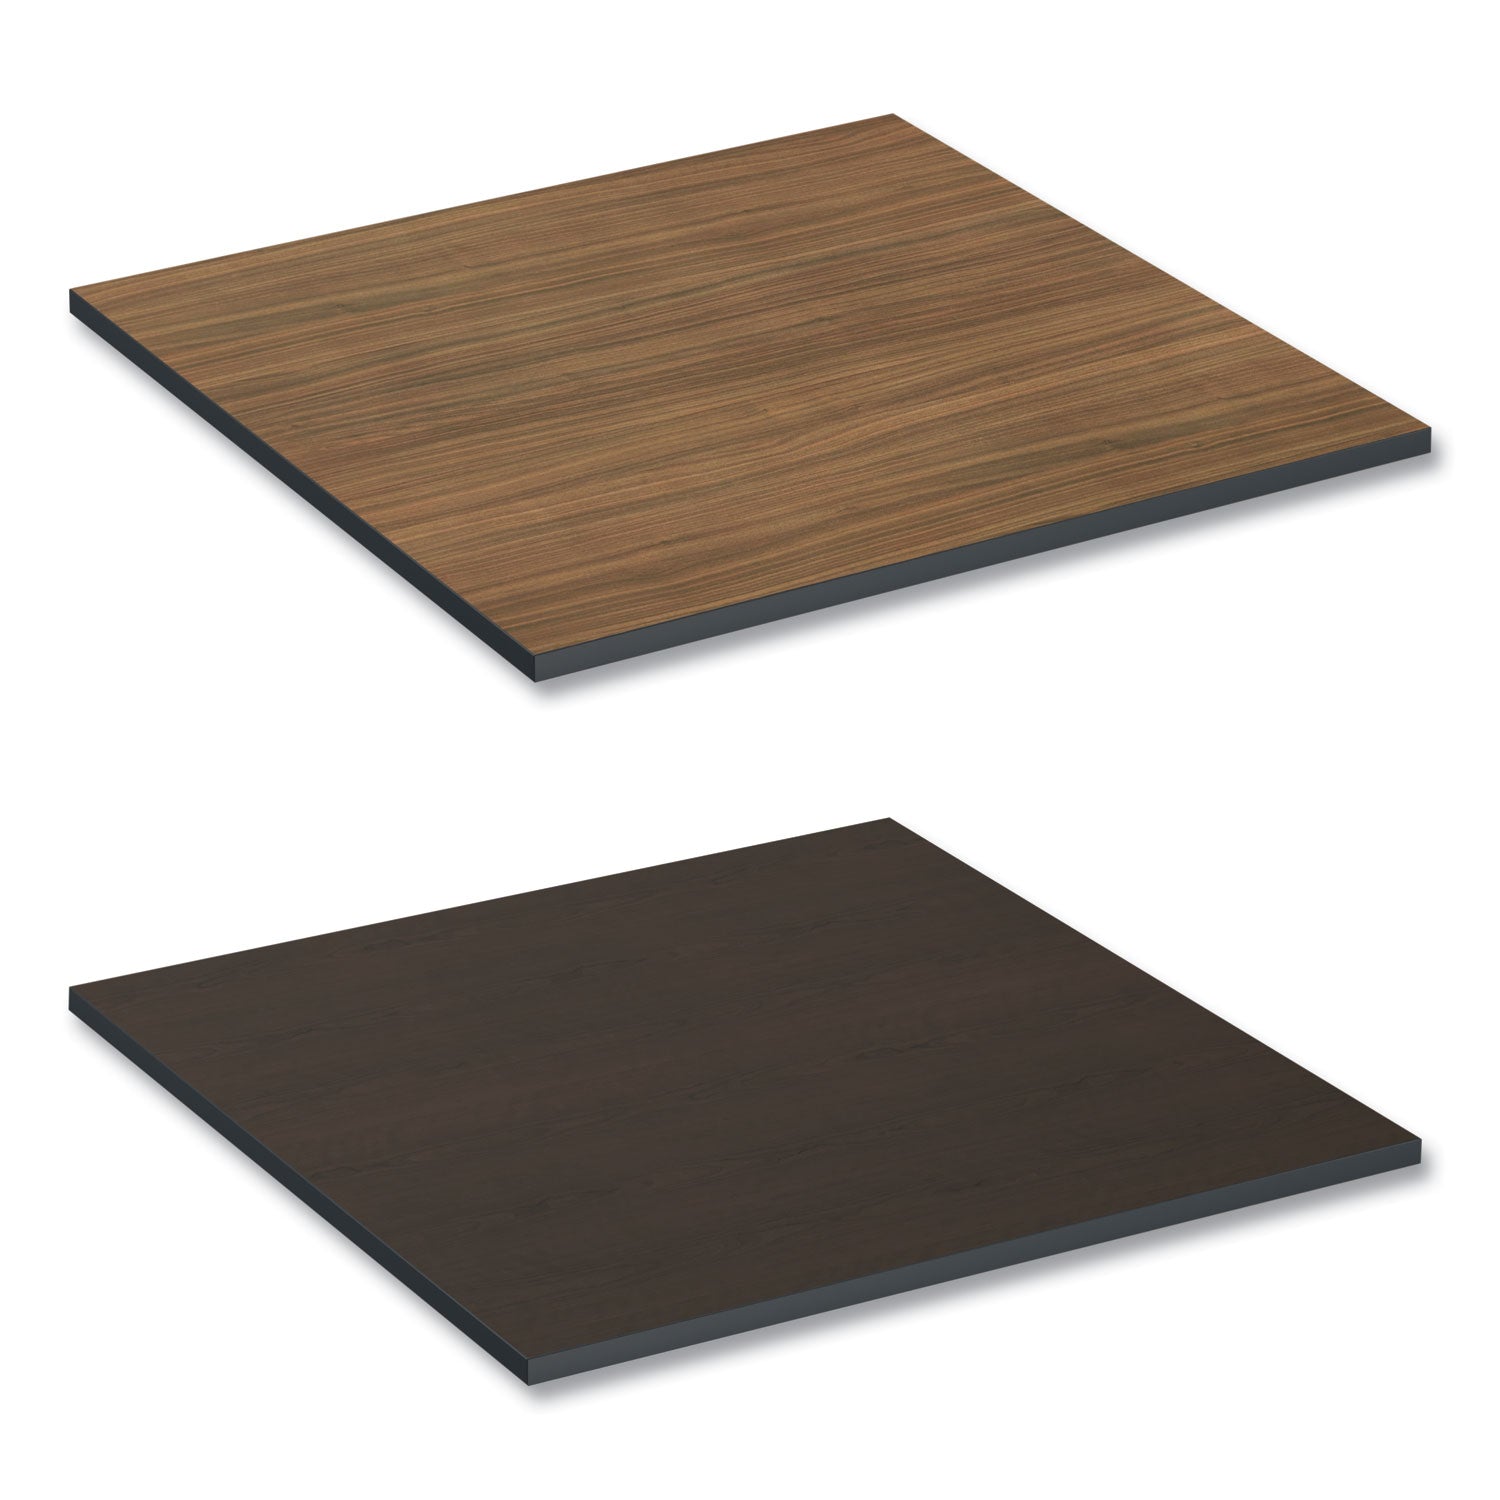 reversible-laminate-table-top-square-3538w-x-3538d-espresso-walnut_alettsq36ew - 1